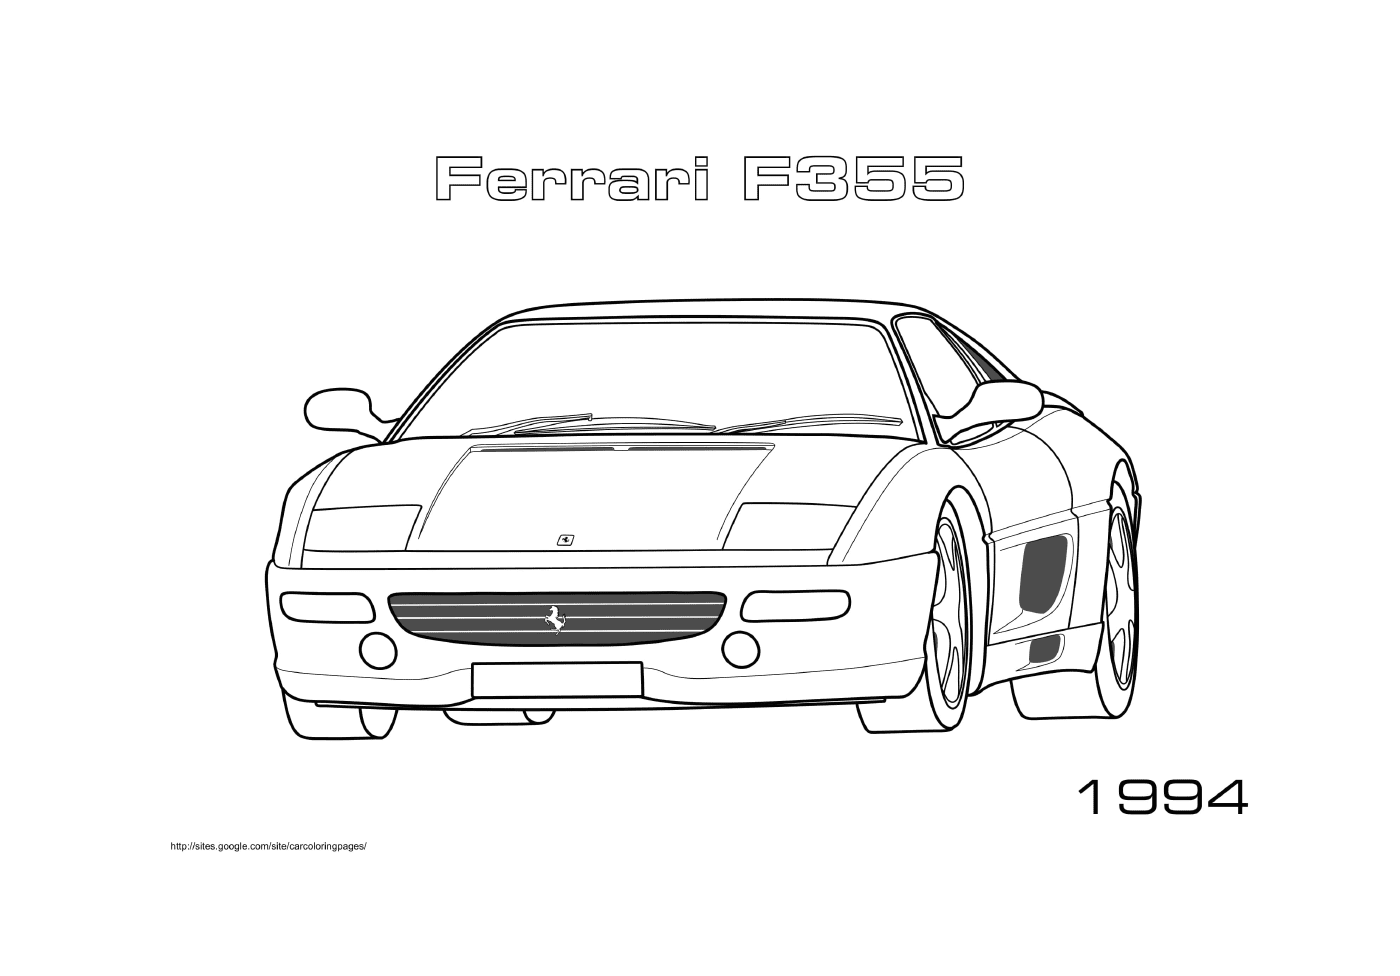  Ferrari F355 del 1994 